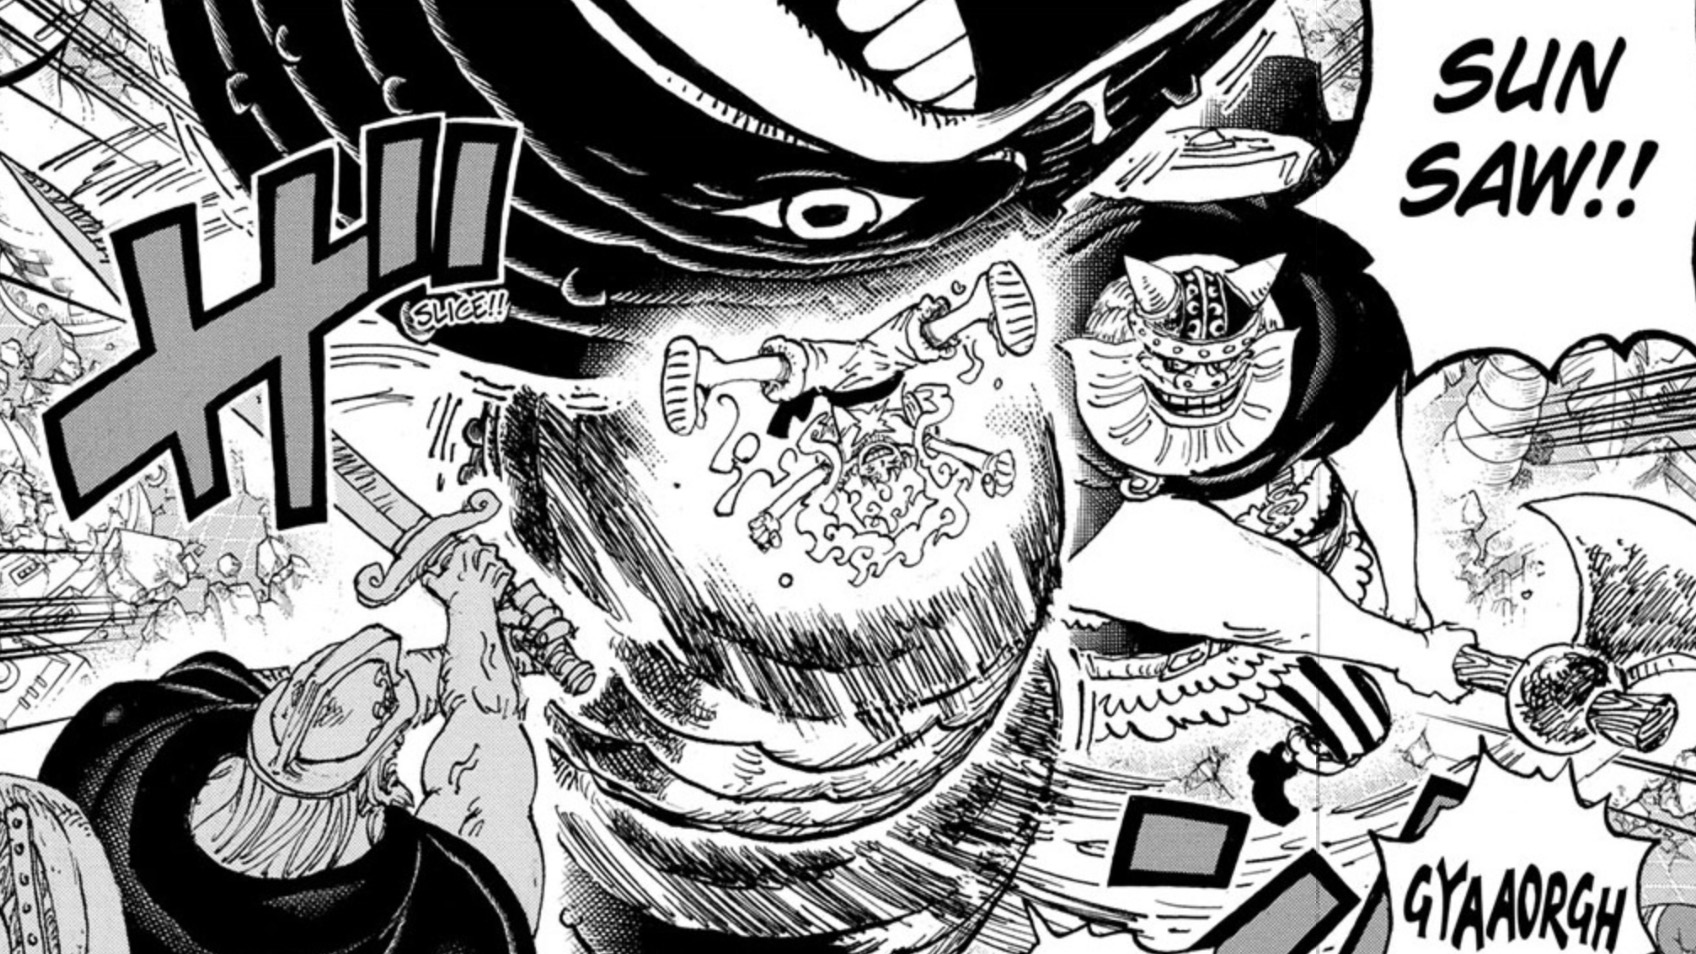 Arte del capítulo 1110 de One Piece